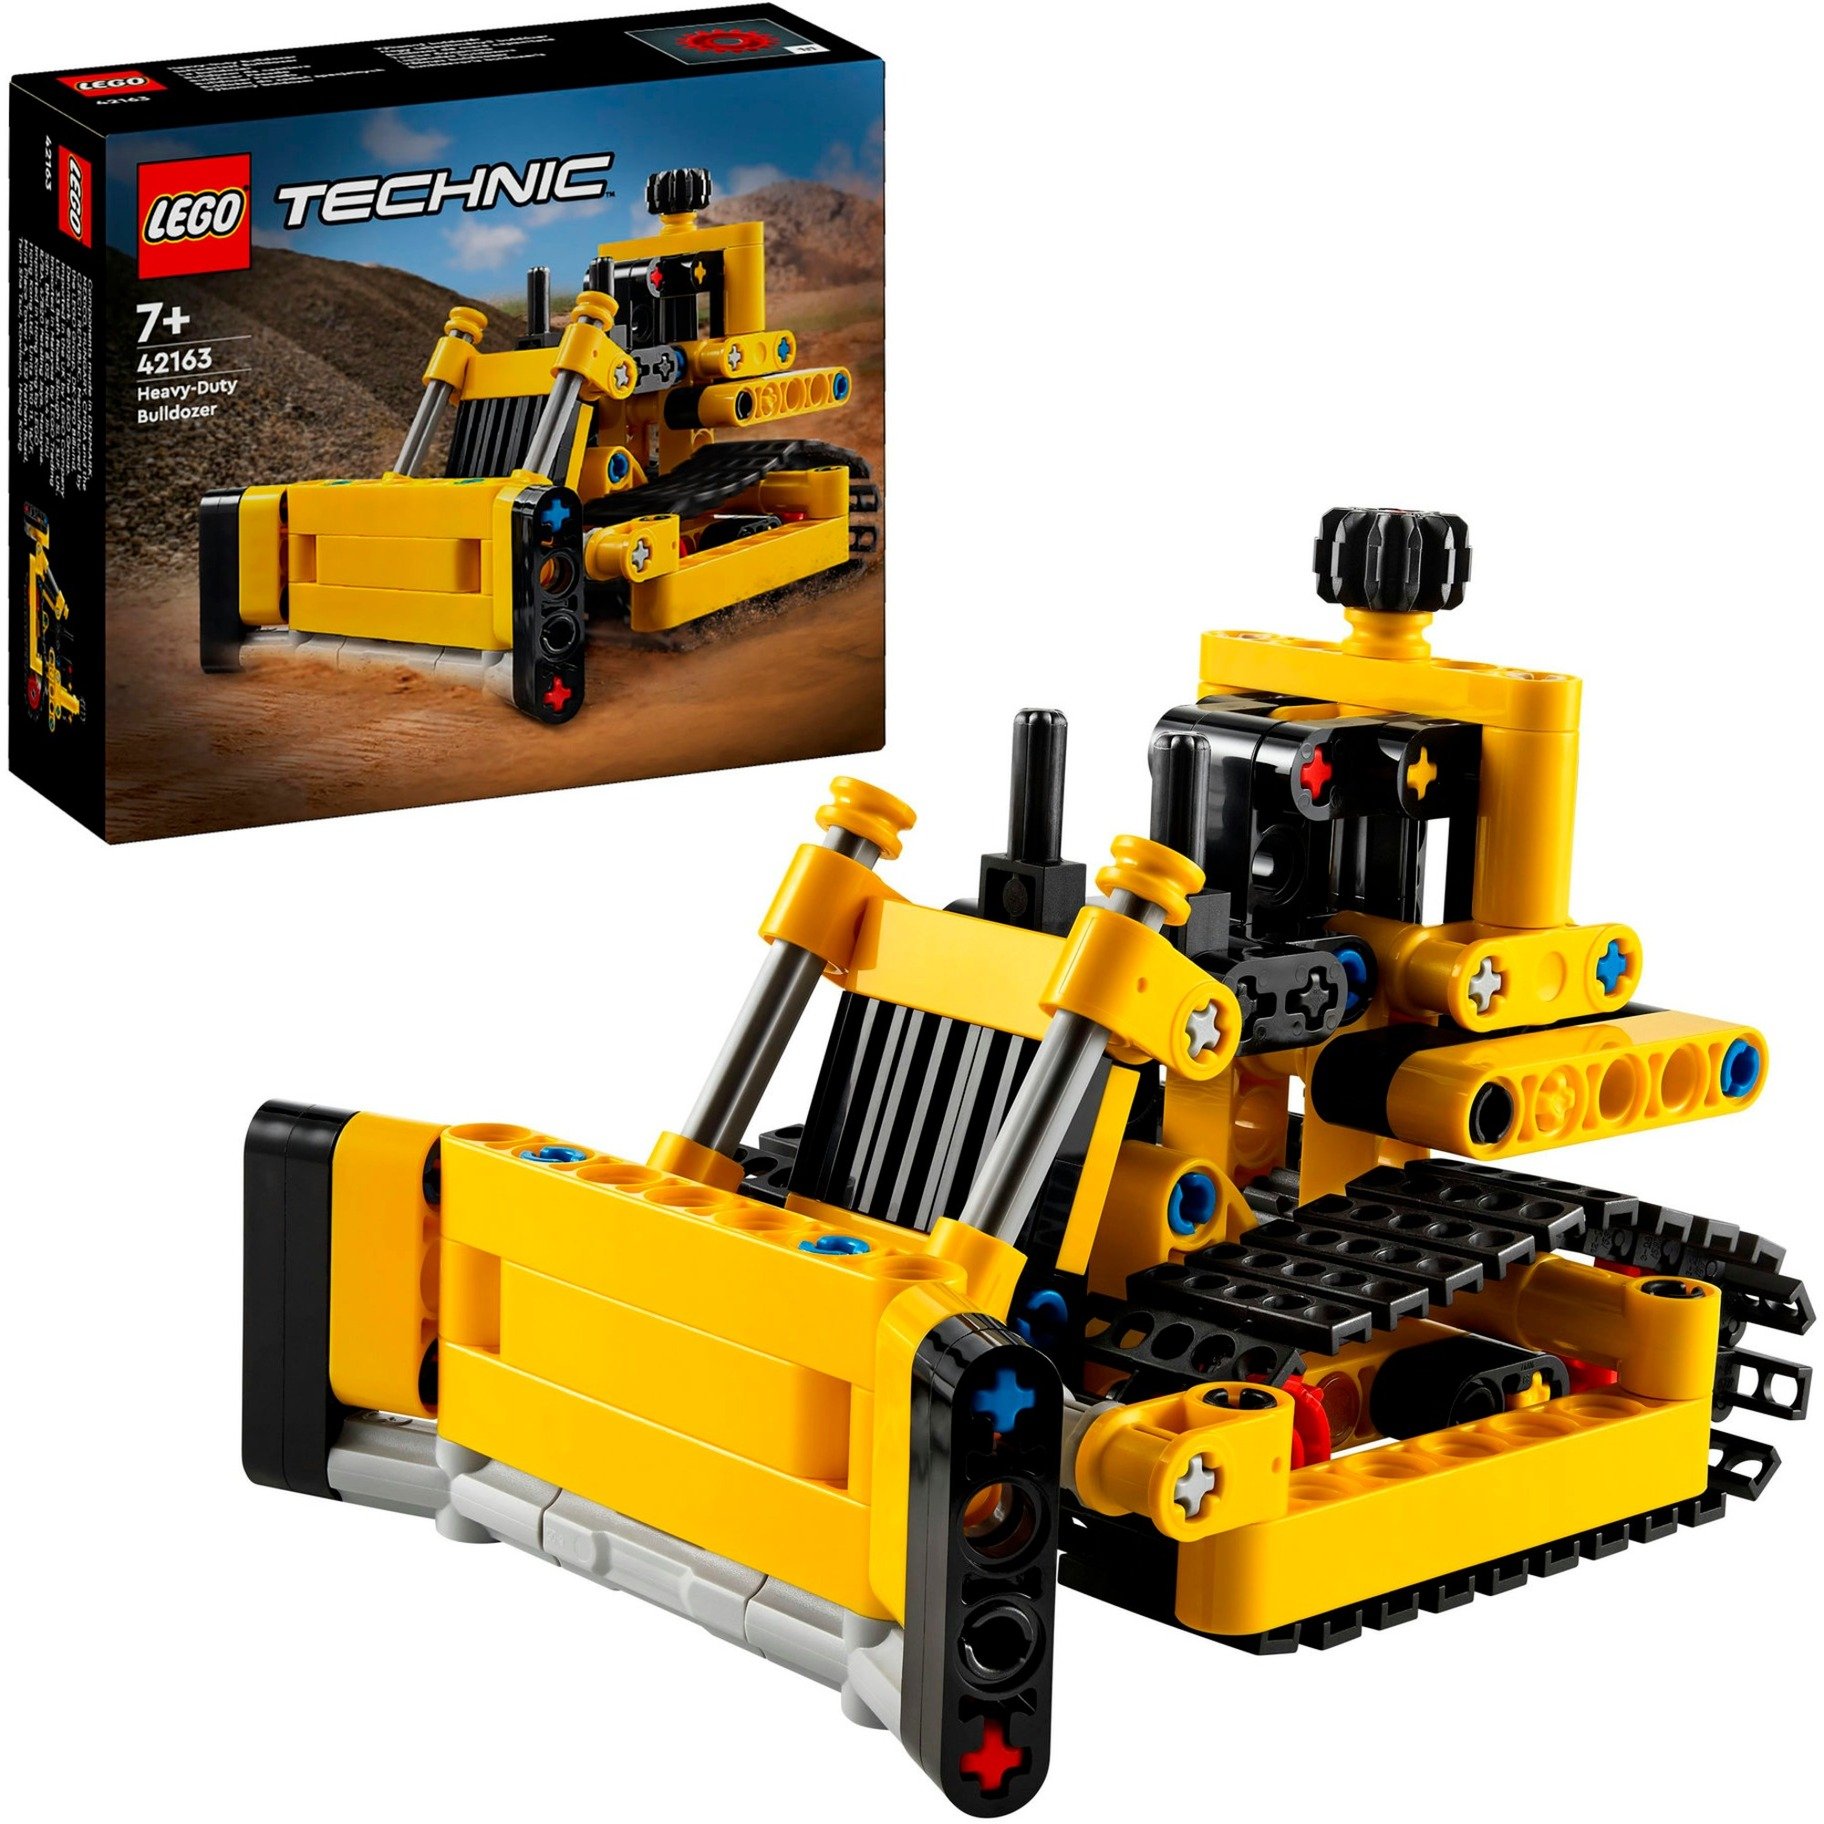 42163 Technic Schwerlast-Bulldozer, Konstruktionsspielzeug von Lego